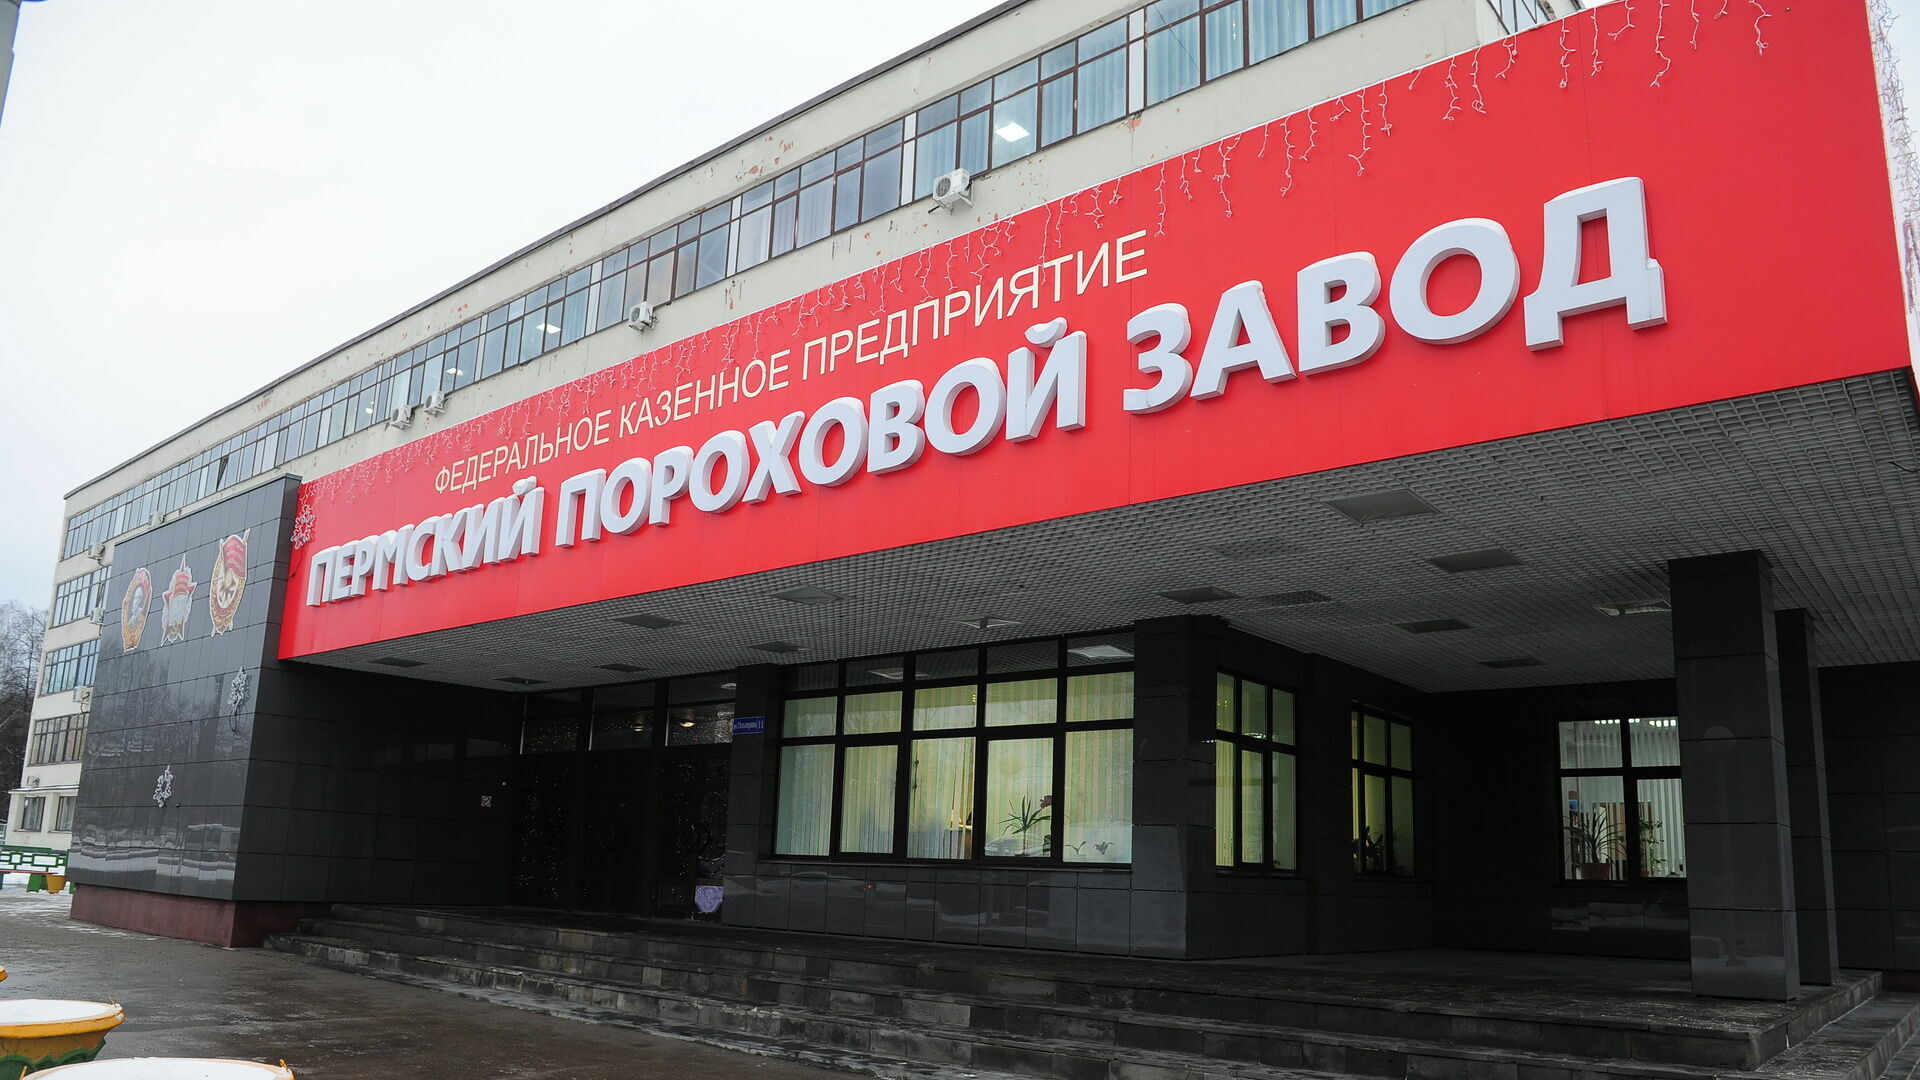 Пермский пороховой завод сократит за полгода 224 человека